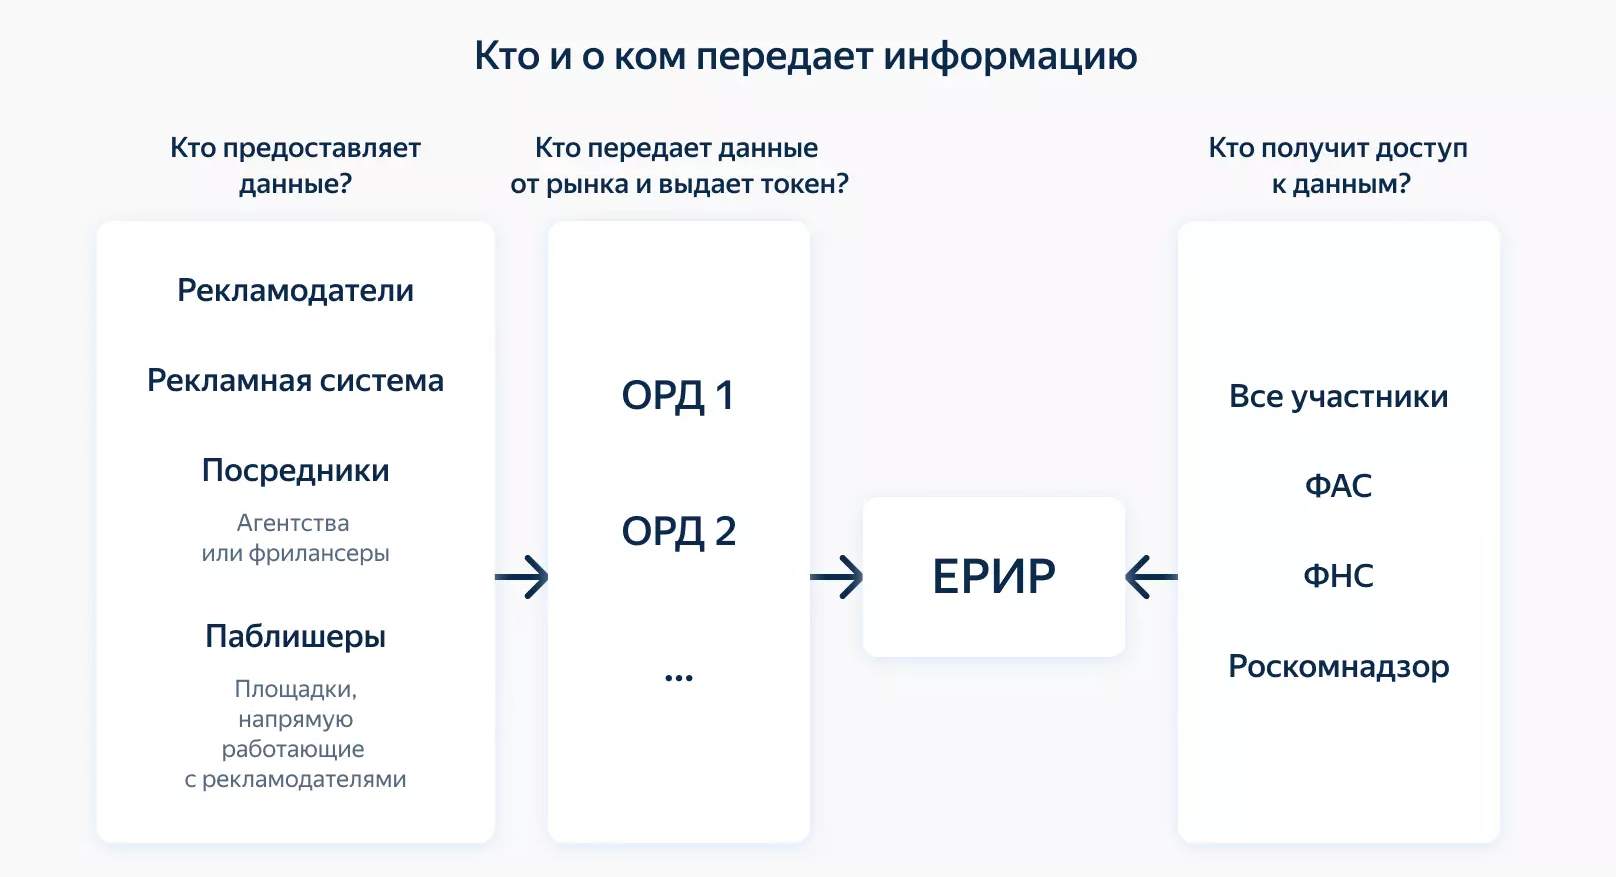 Роскомнадзор утвердил операторов рекламных данных (ОРД)